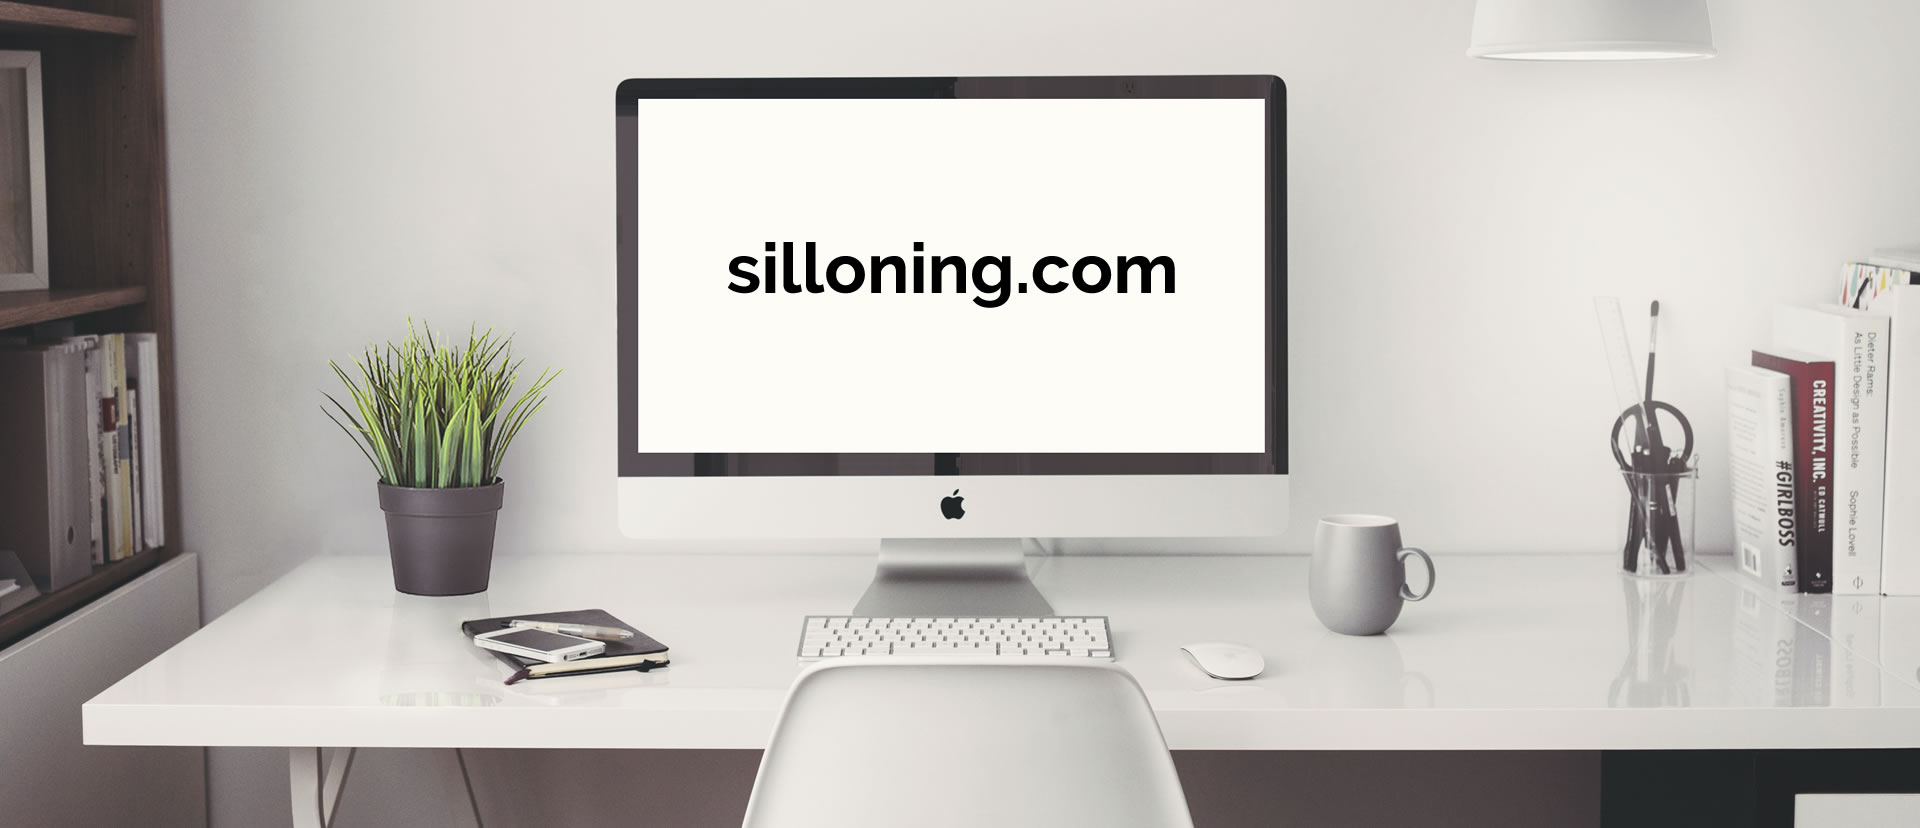 silloning.com